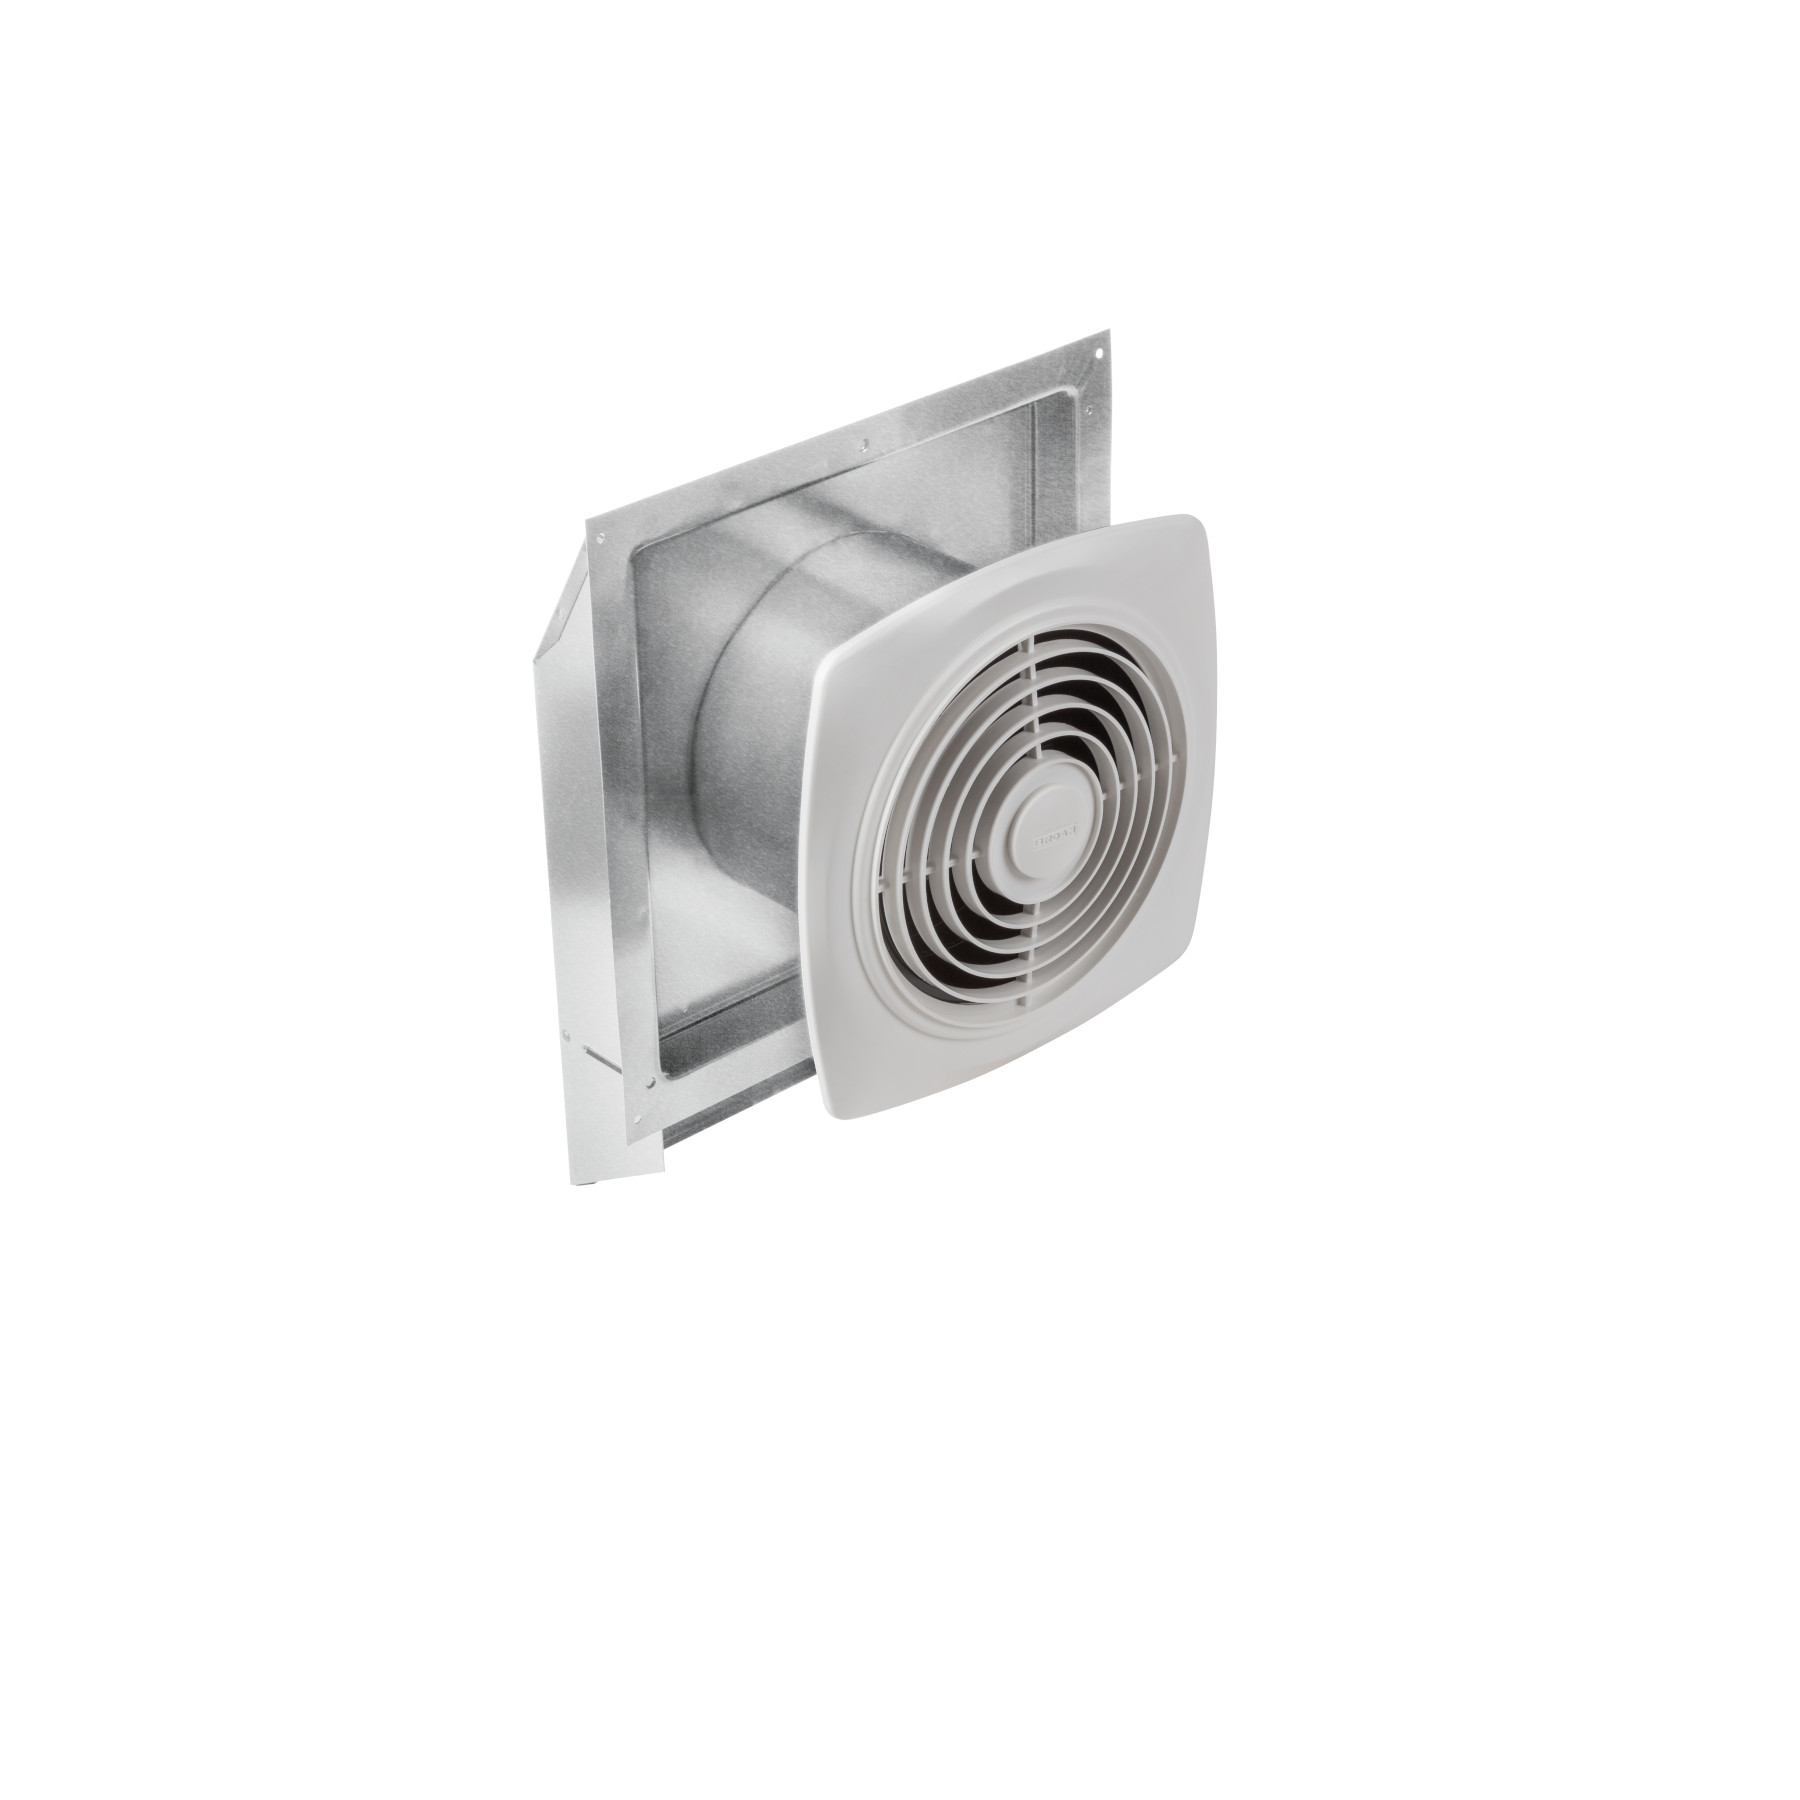 Broan® 290 CFM Through-Wall Ventilation Fan